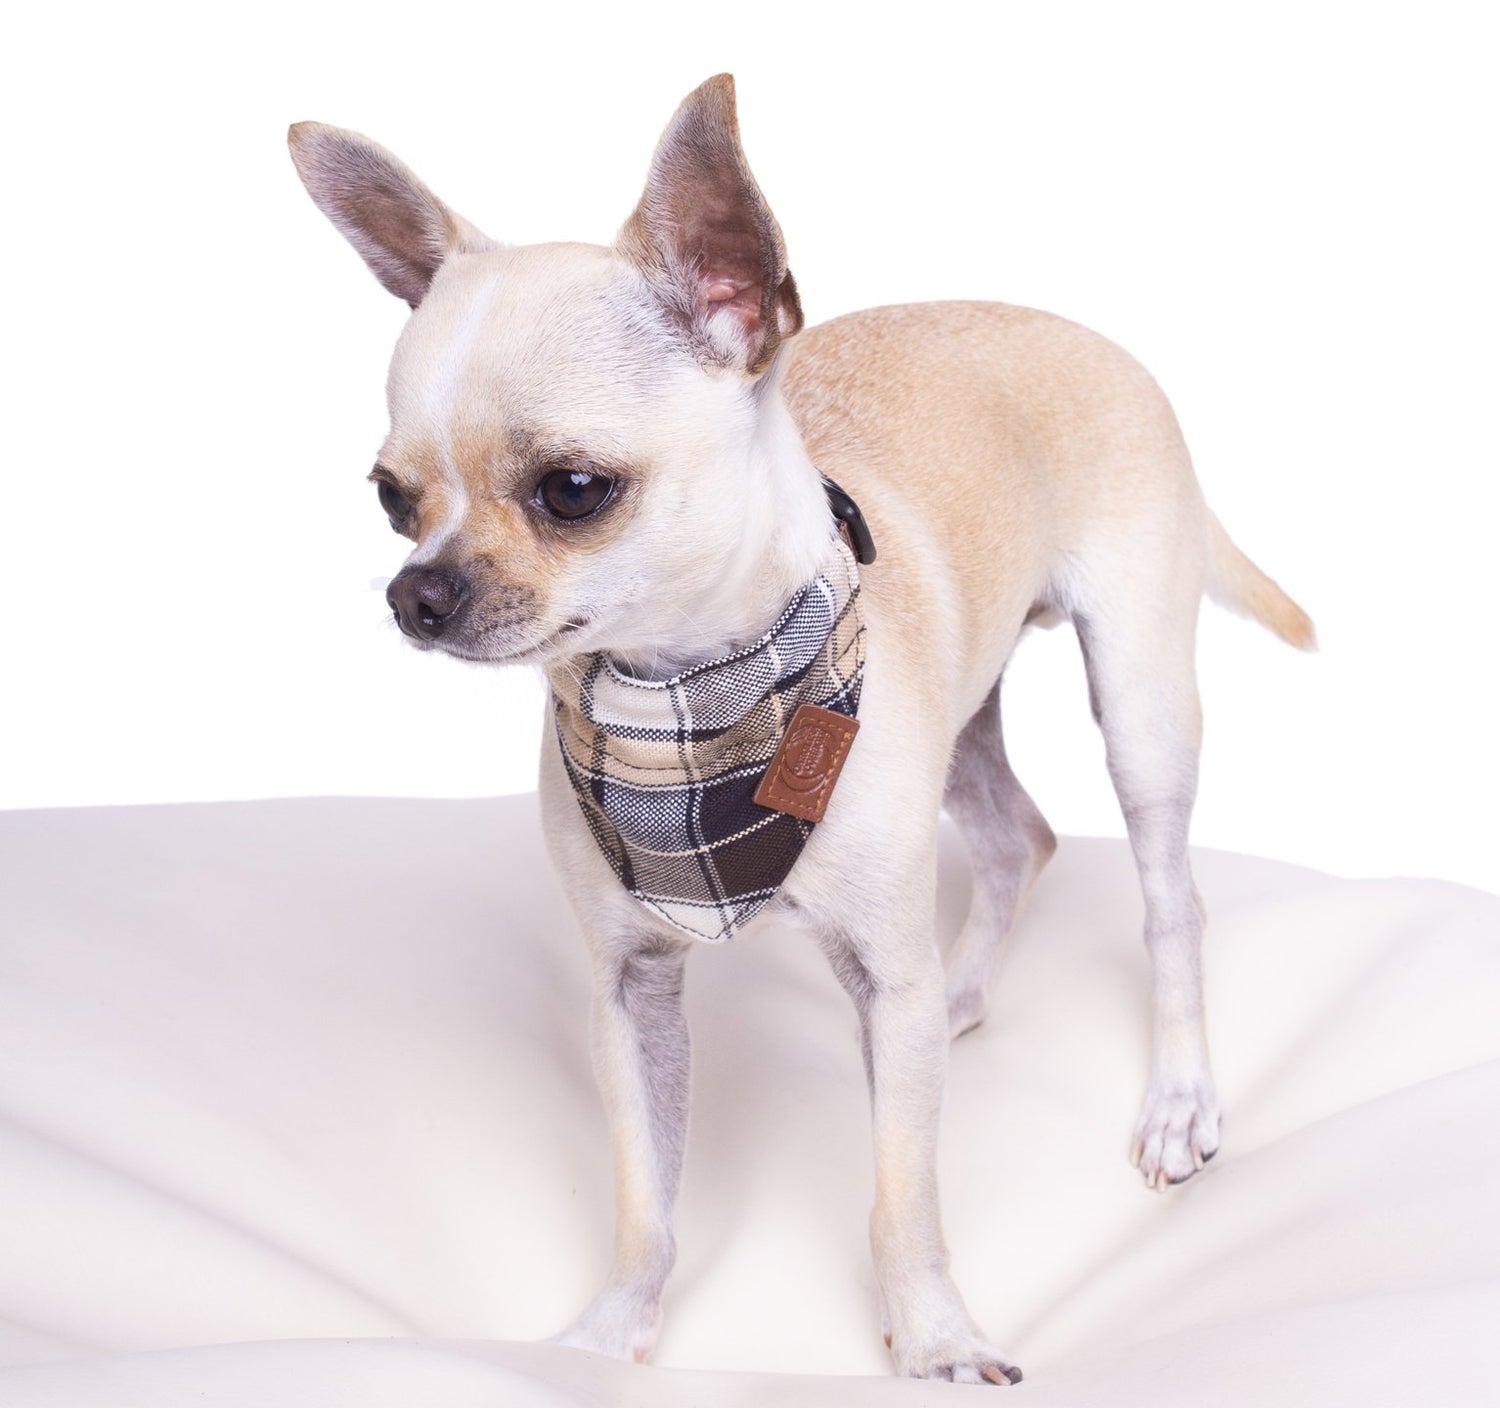 Colorado Bandana (serves as a collar; attach the dog leash directly to the bandana)